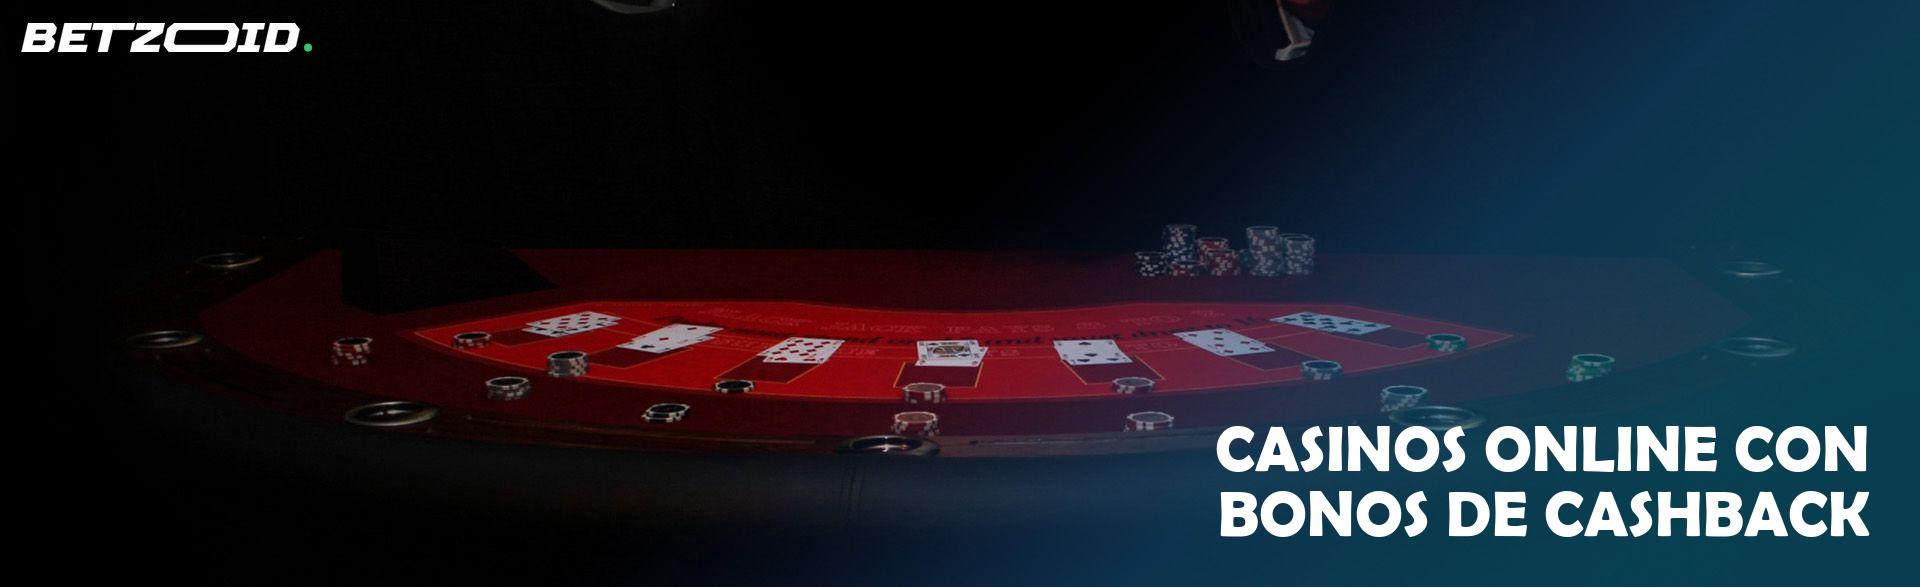 Seguros con Cashback para jugadores de casinos